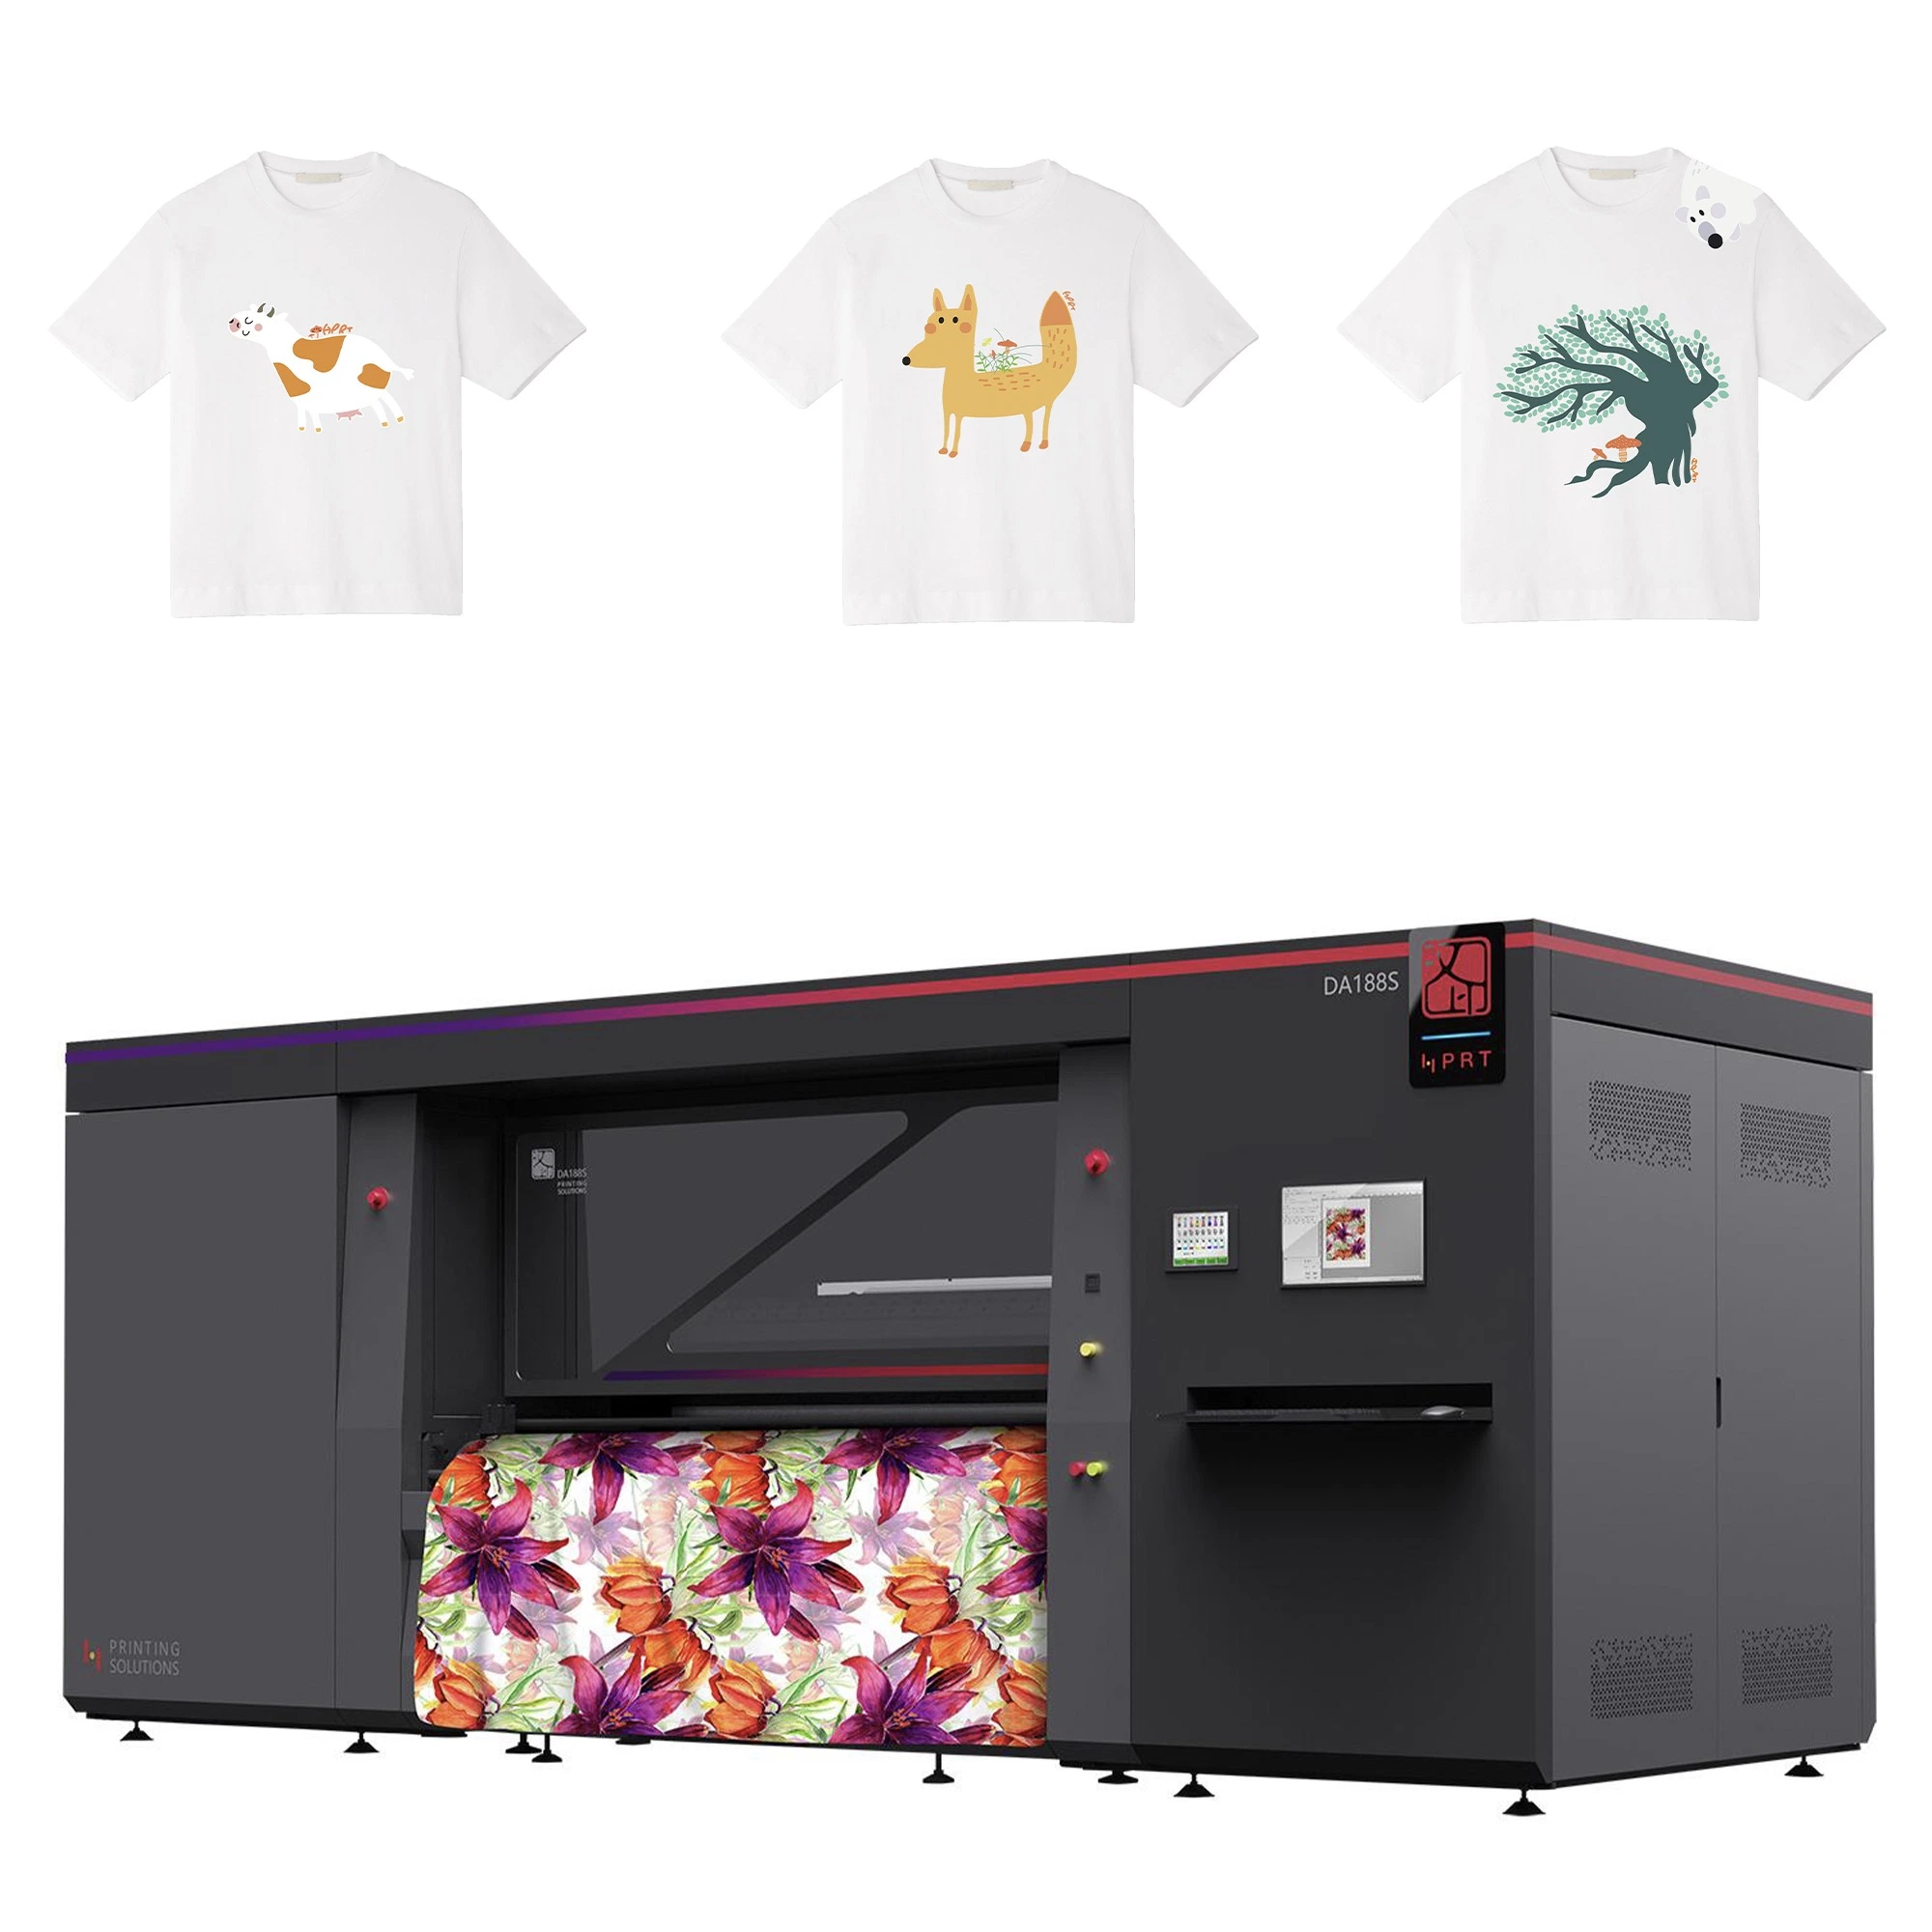 Kyocera печатающей головки/16 32 цветов/HPRT промышленного рулона в рулон цифровой струйный принтер текстильной одежды Tshirt печатной машины